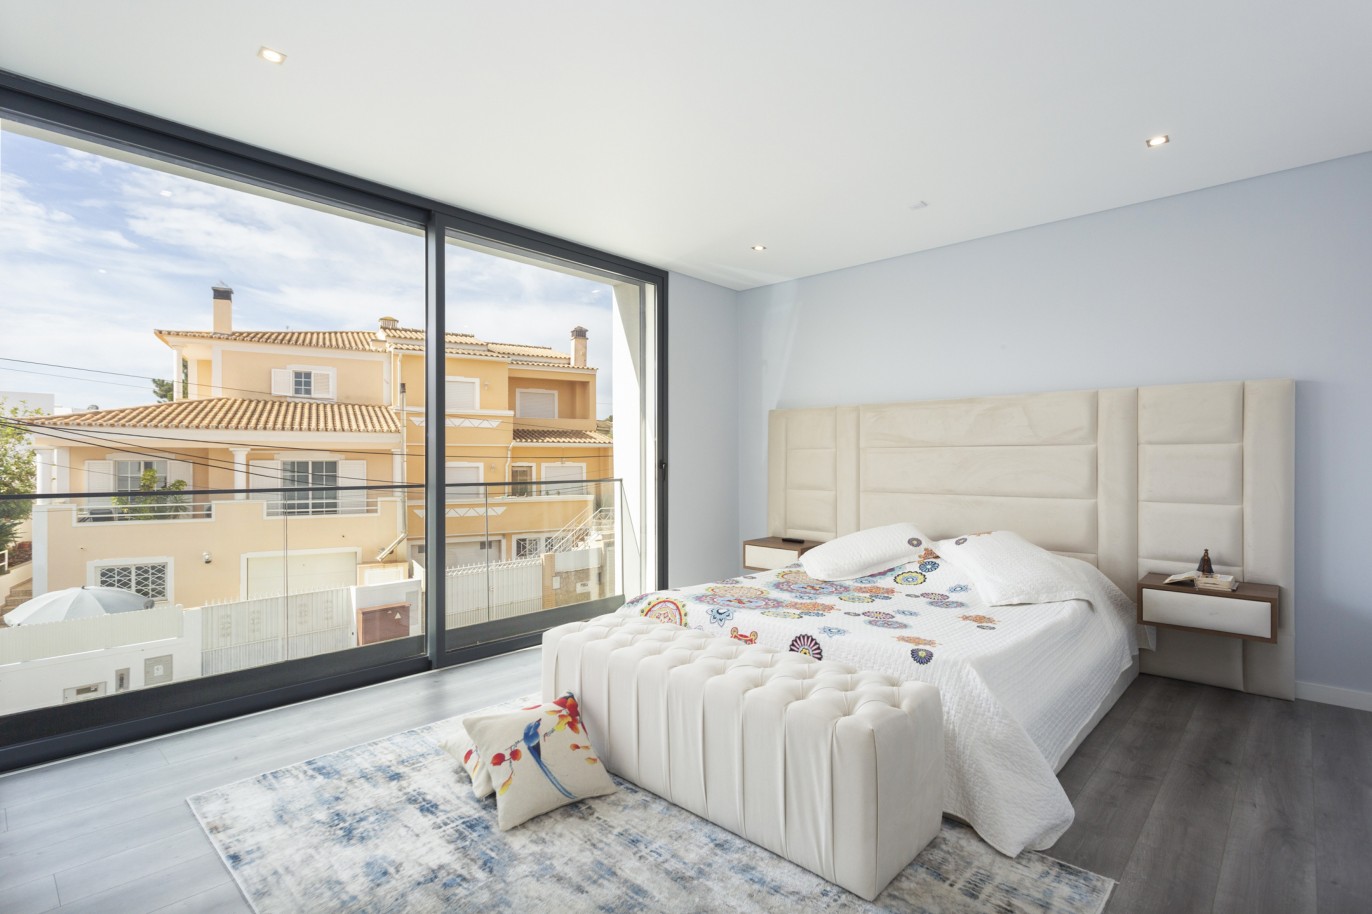 4 bedroom luxury detached villa with pool, in Bemposta, Algarve_224035